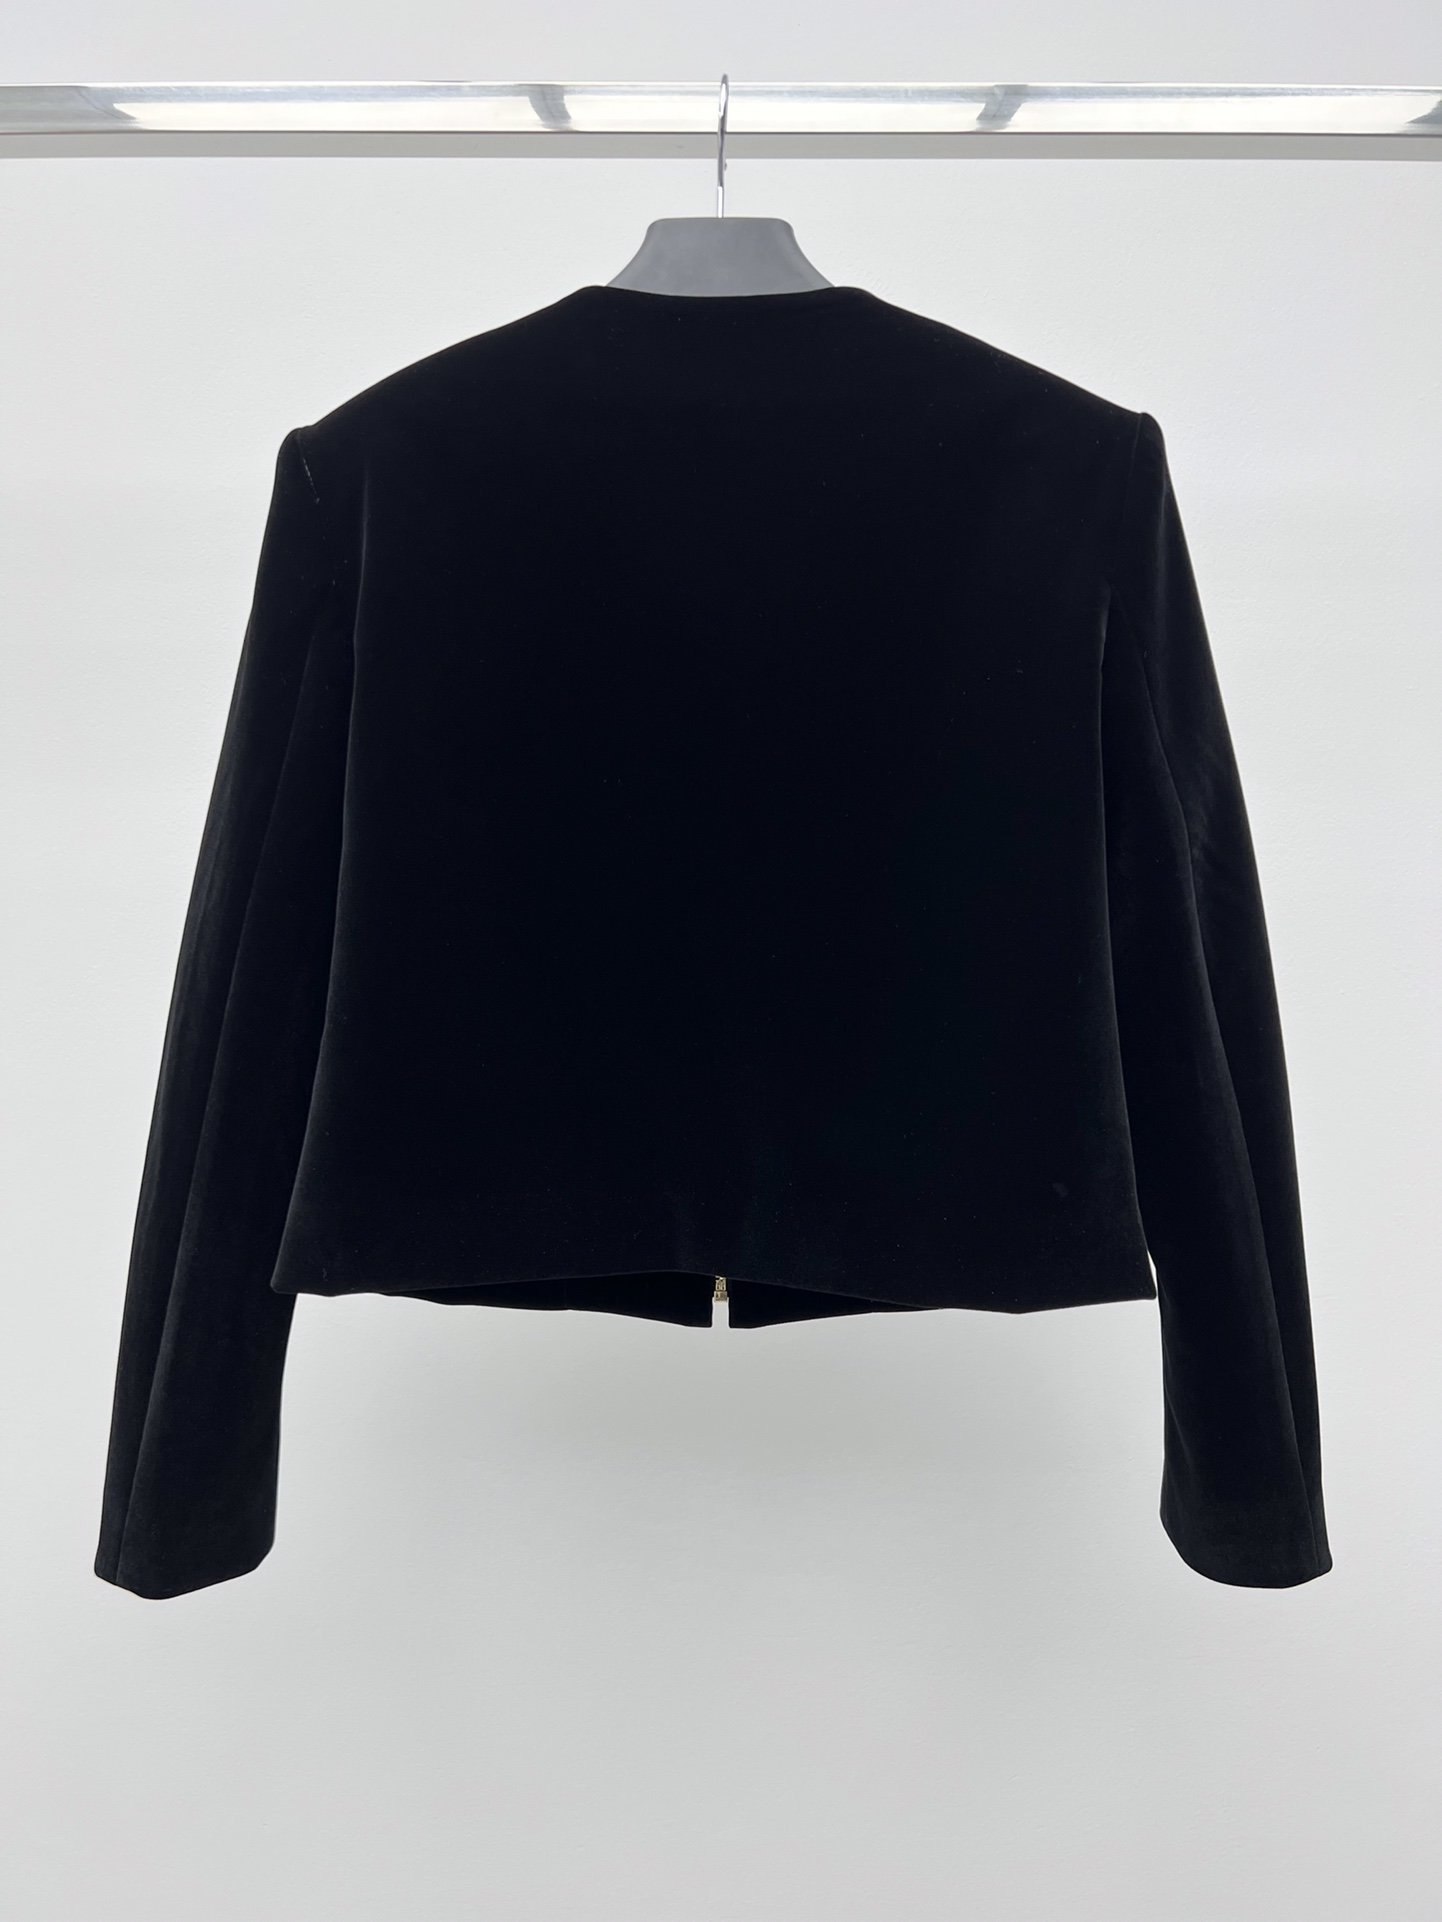 PRAD*丝绒圆领夹克选用细腻柔软的丝绒质感打造挺括的肩部设计与优雅的圆领廓形优雅融合精致细节与休闲格调